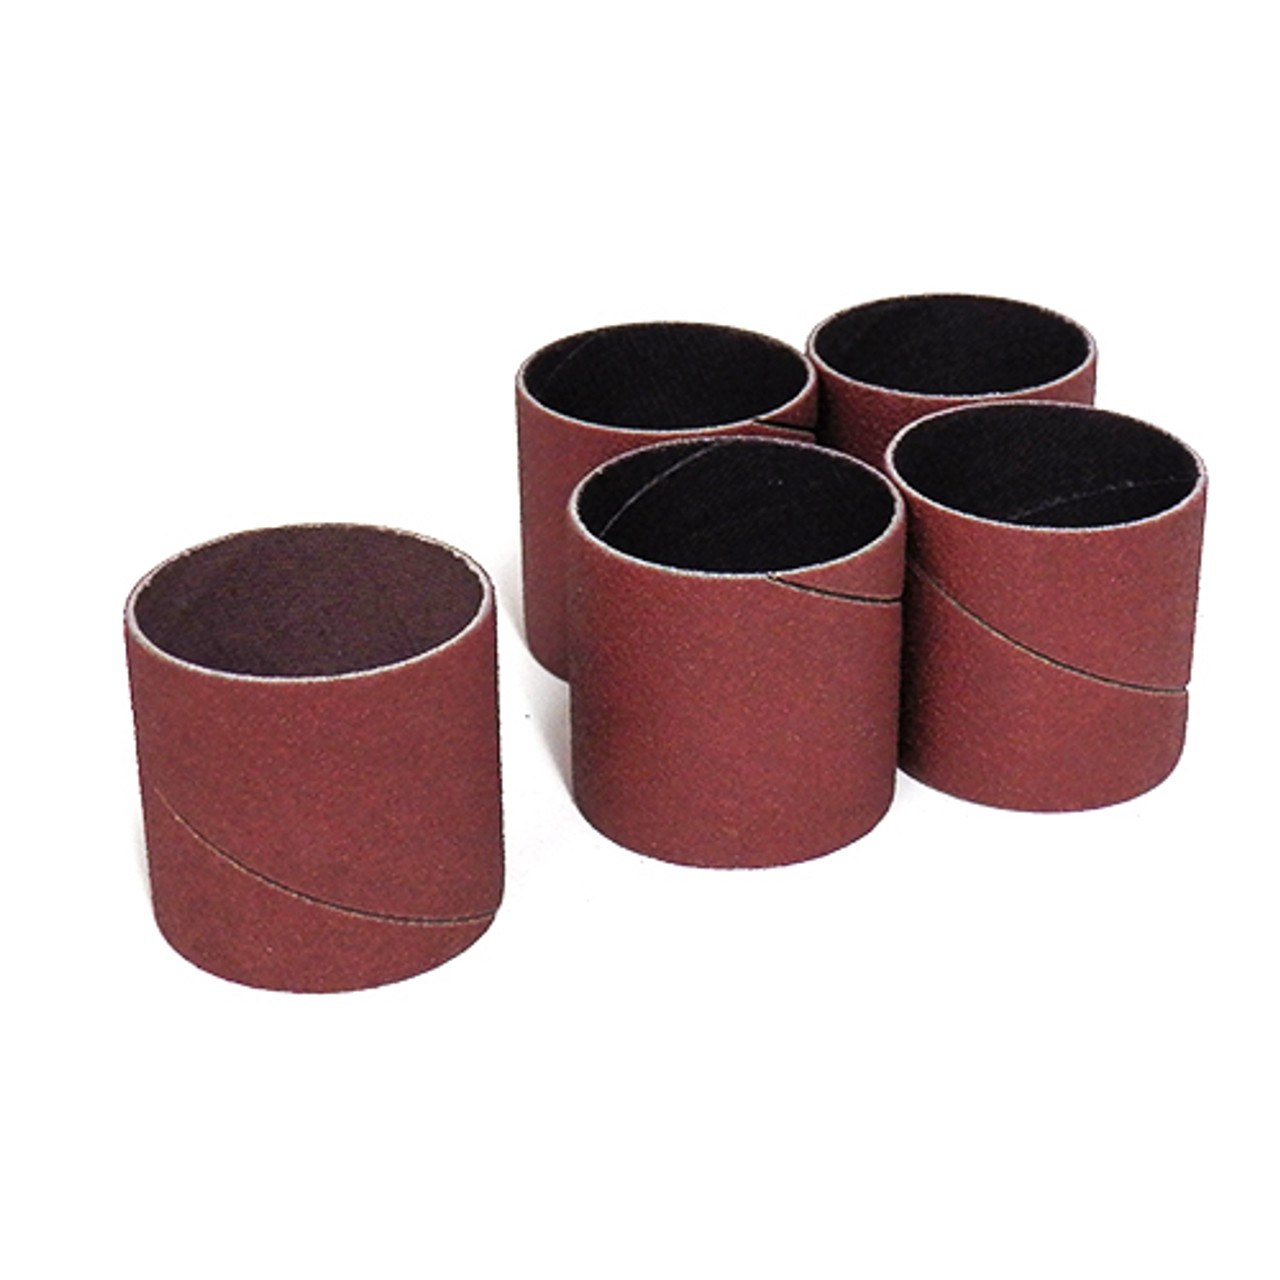 Klingspor Abrasives Aluminum Oxide Sanding Sleeves, 1-1/2"X 1-1/2" 150 Grit, 5pk